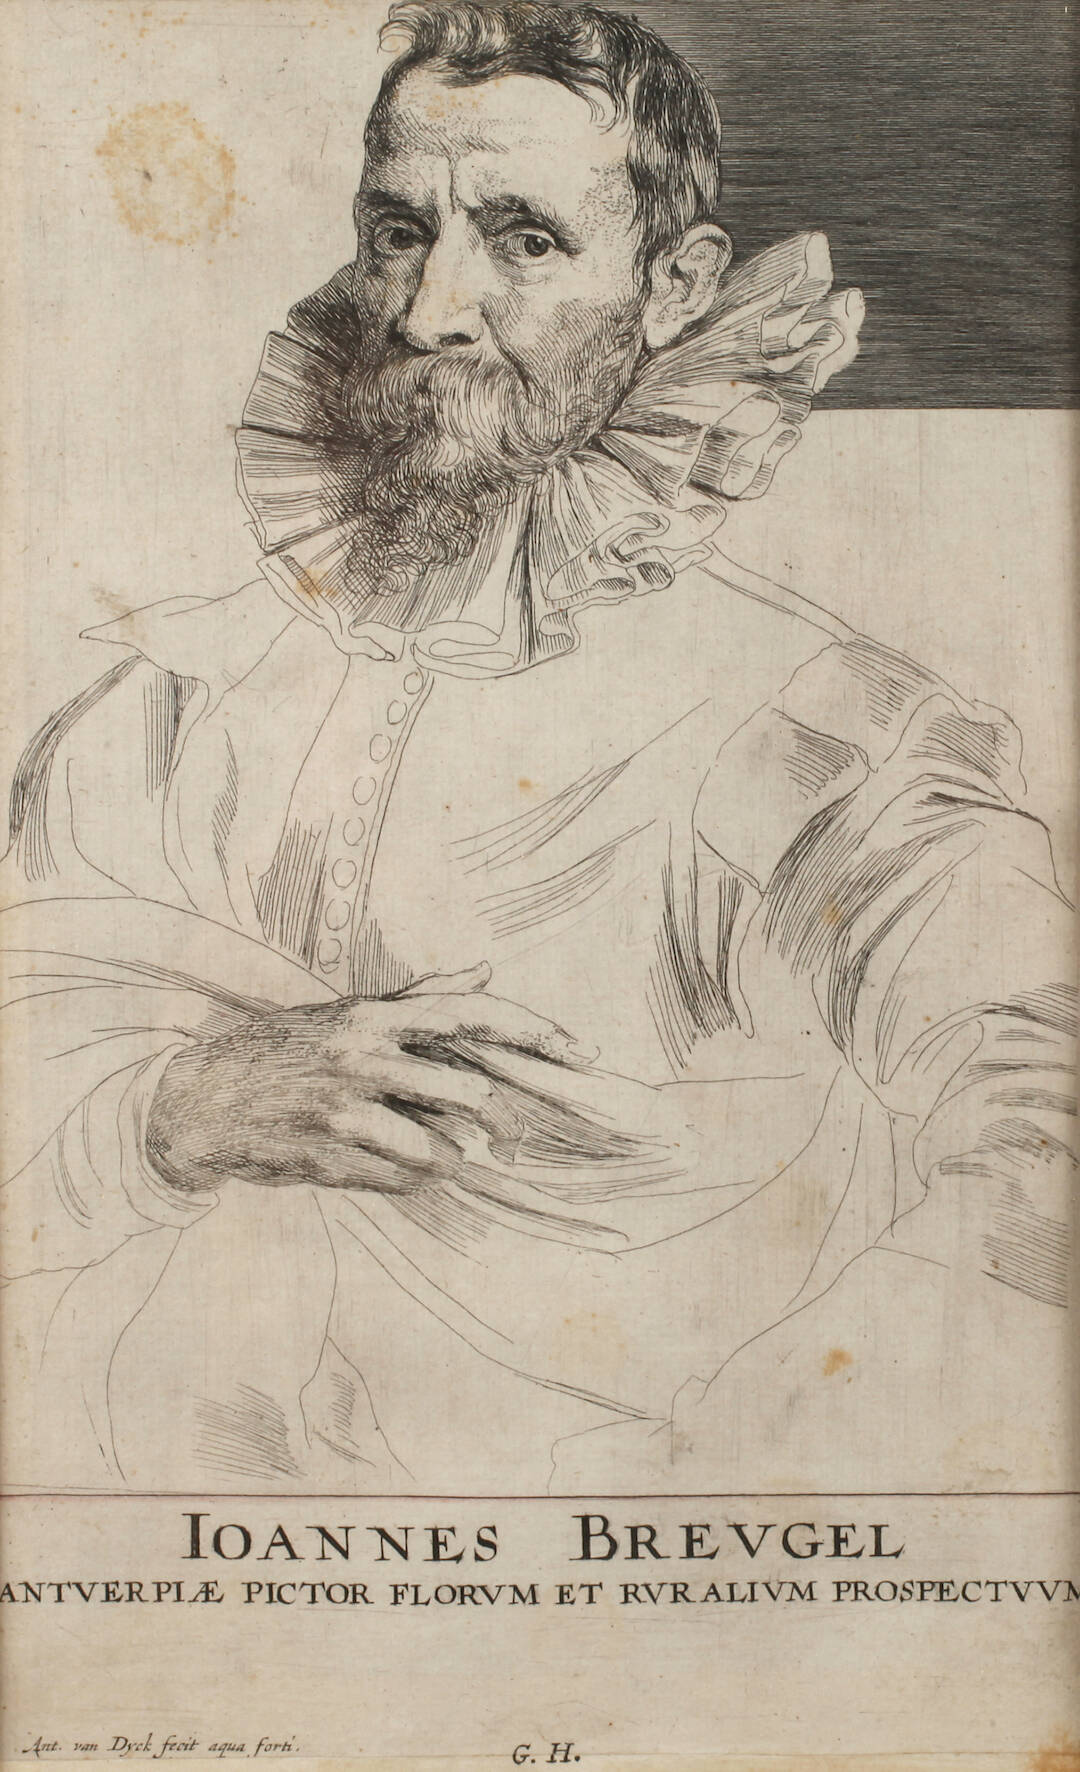 Anthonis van Dyck, "Johannes Brueghel"